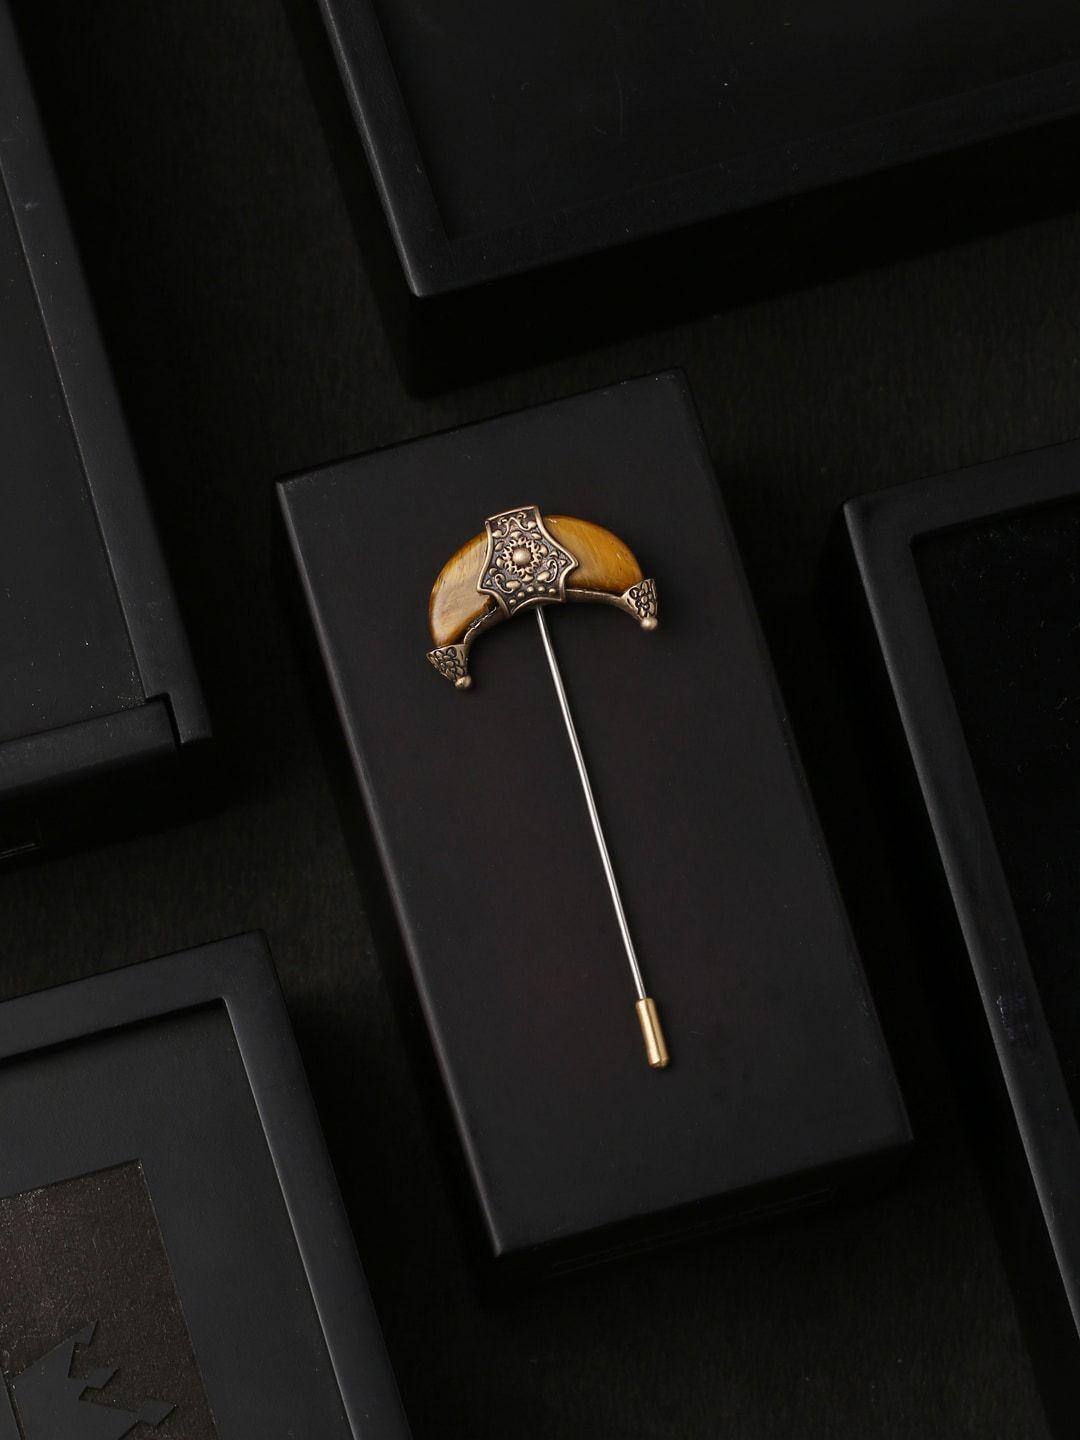 cosa nostraa men silver-toned & gold-toned the crescent moon-shaped lapel pin